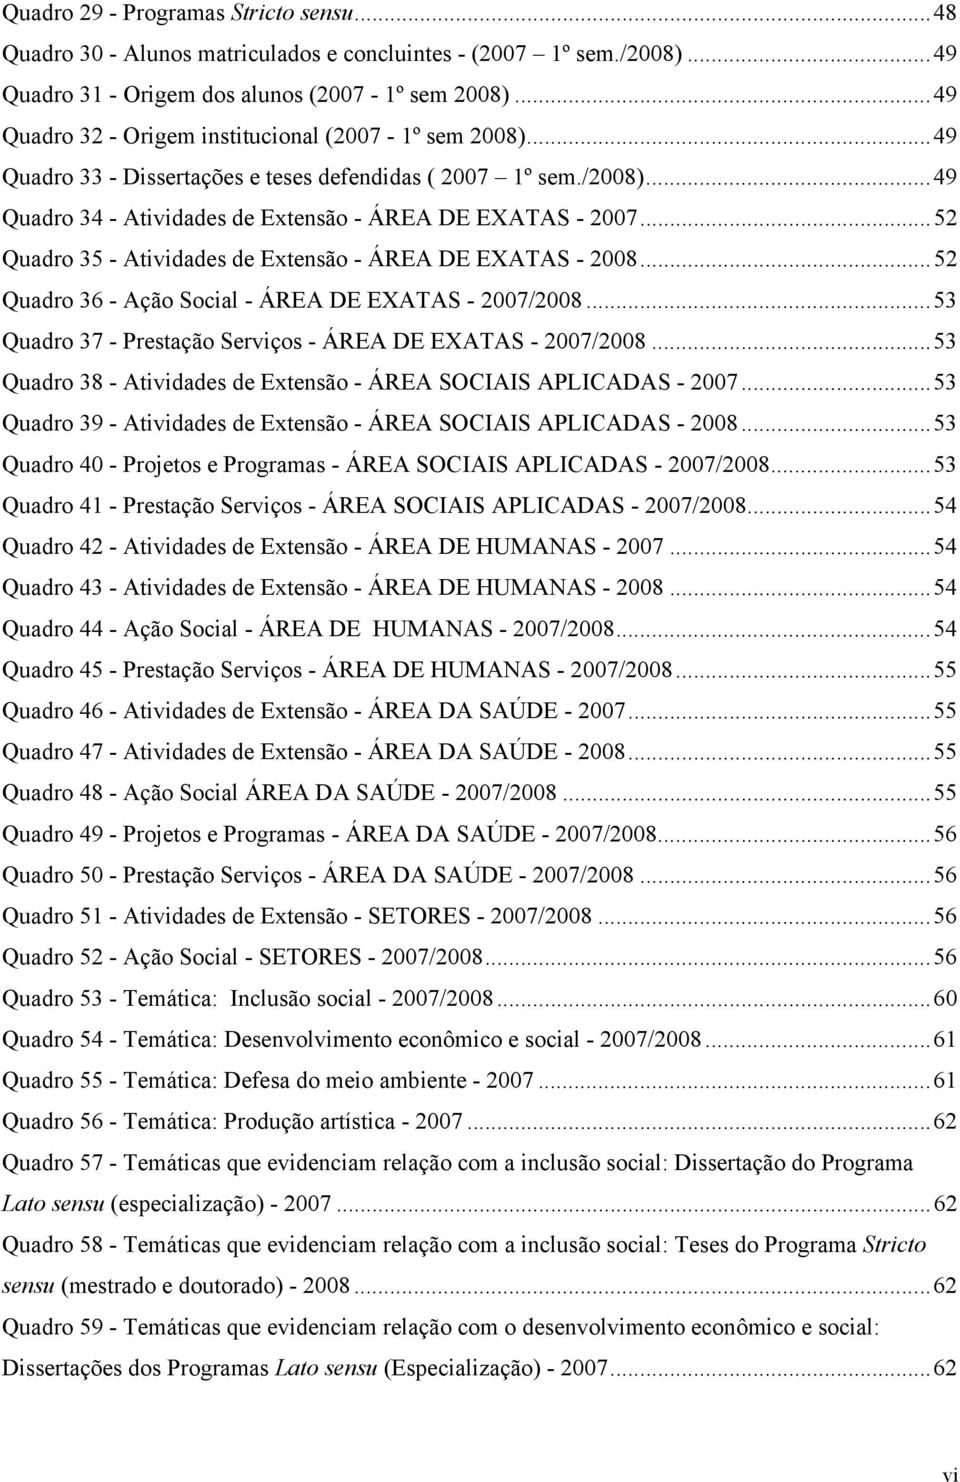 ..52 Quadro 35 - Atividades de Extensão - ÁREA DE EXATAS - 2008...52 Quadro 36 - Ação Social - ÁREA DE EXATAS - 2007/2008...53 Quadro 37 - Prestação Serviços - ÁREA DE EXATAS - 2007/2008.